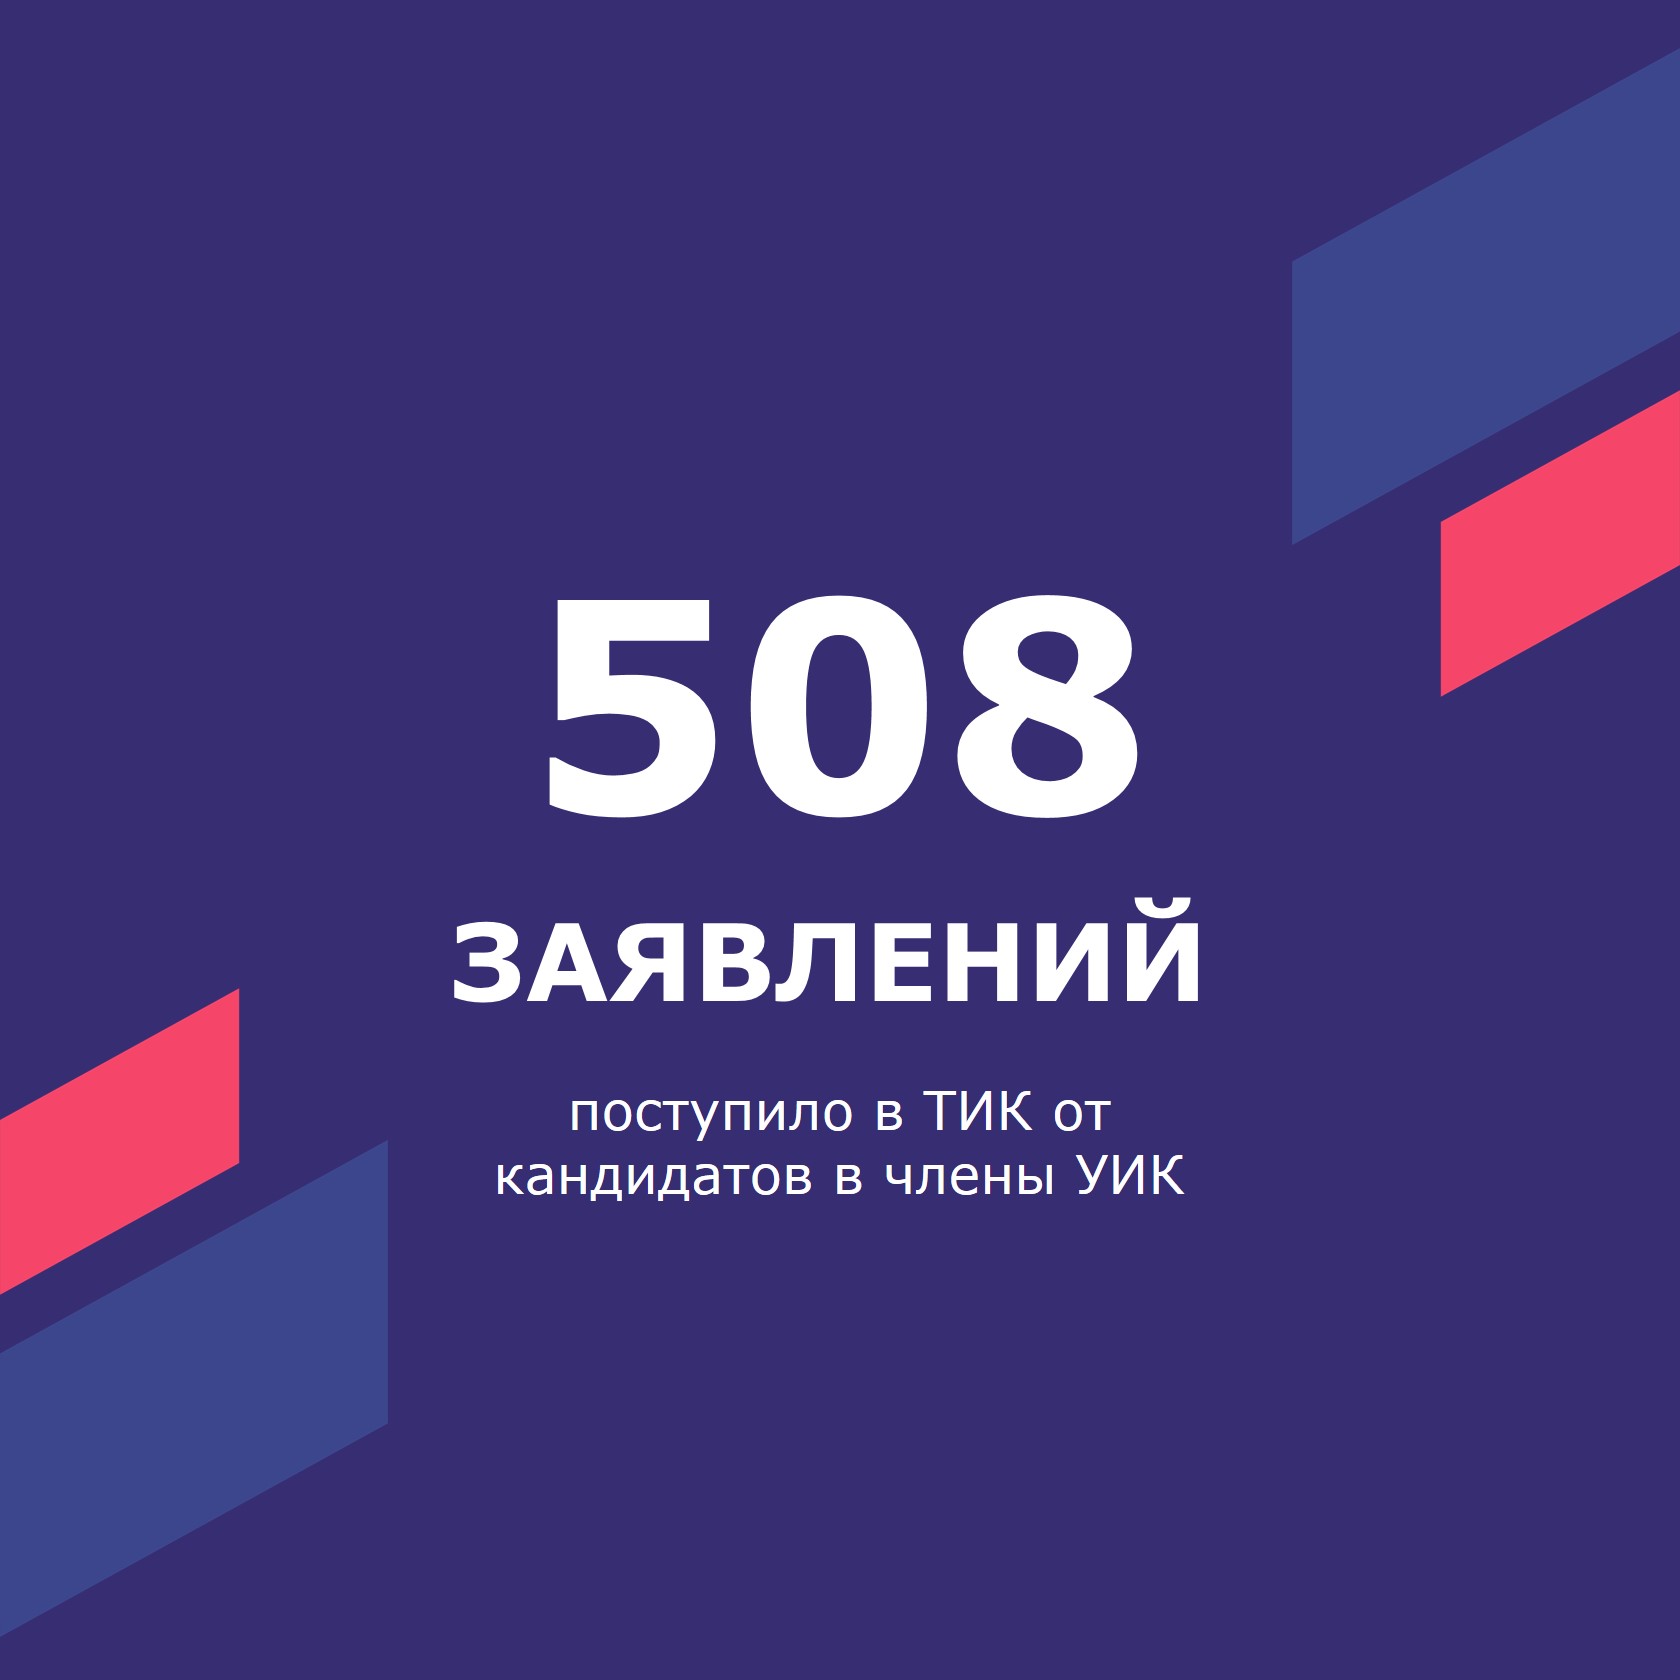 508 заявлений подано от кандидатов в члены УИК